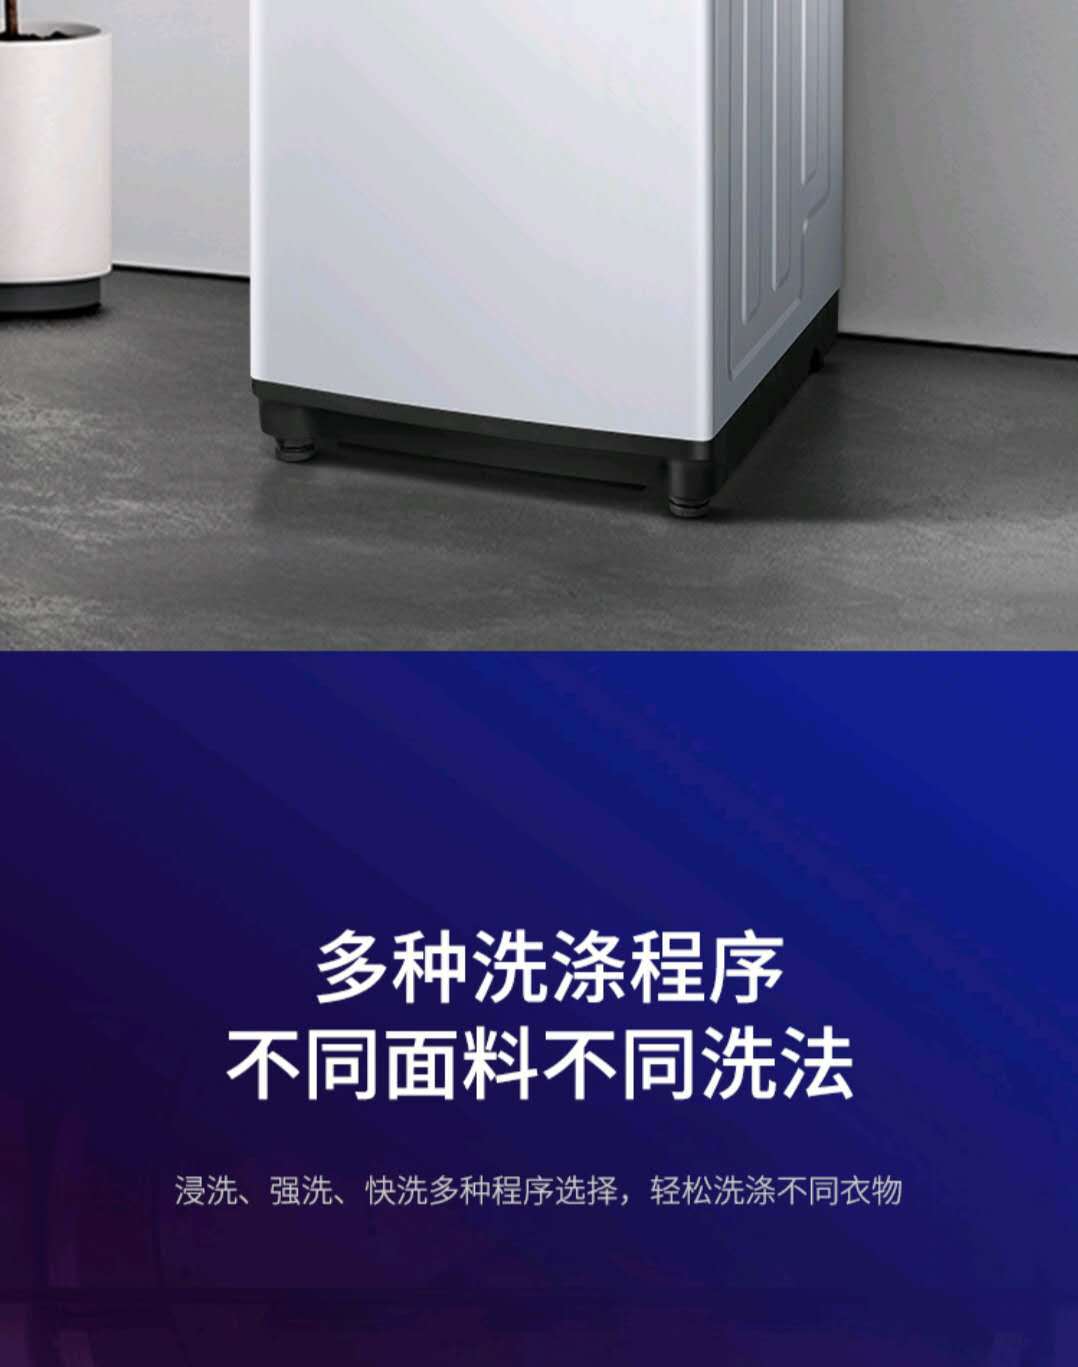 美的出品华凌HB100-C1H 10公斤全自动波轮洗衣机